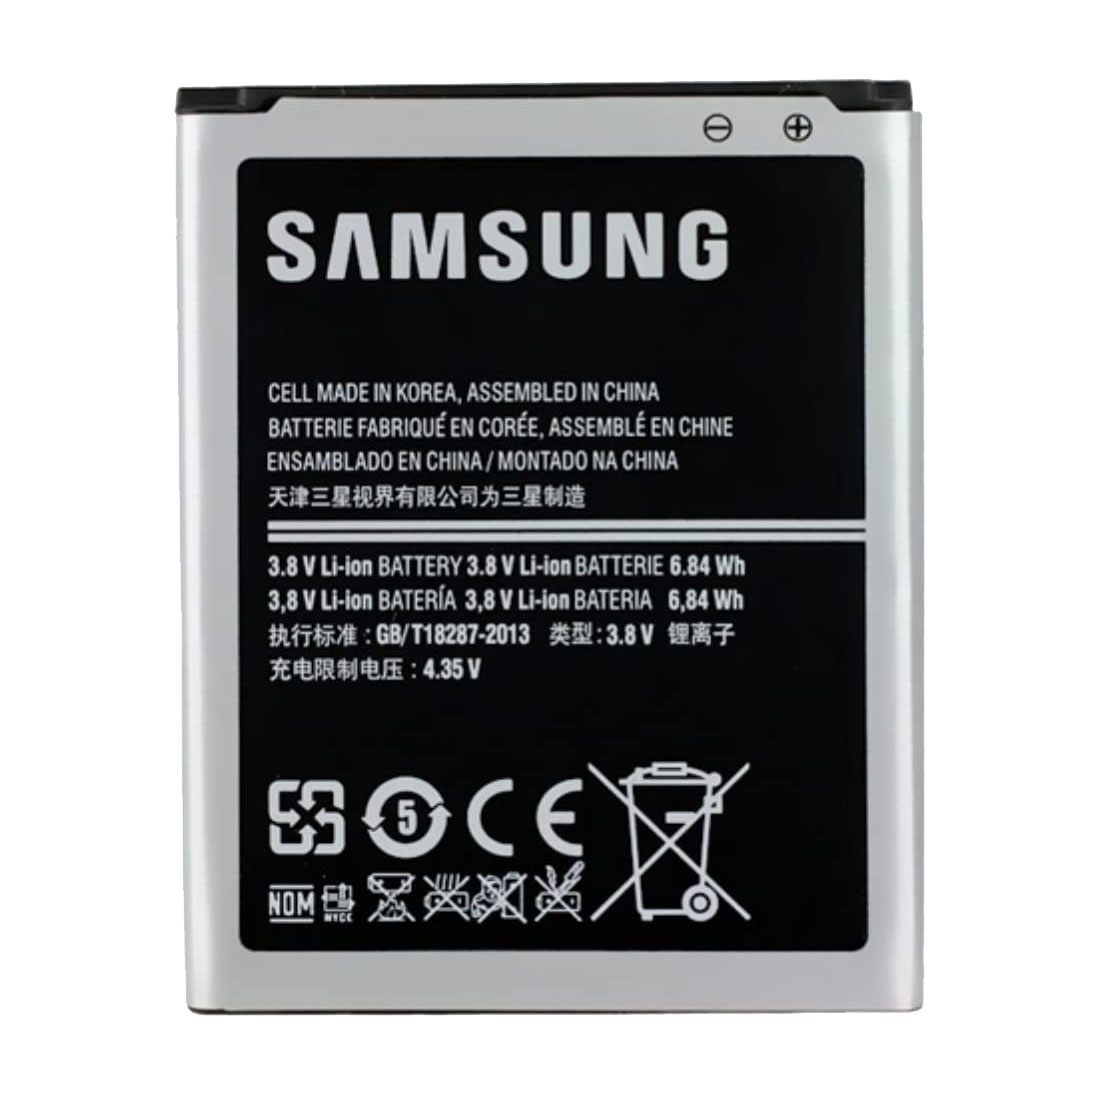 باتری موبایل مدل B150AE ظرفیت 1800 میلی آمپر ساعت مناسب برای گوشی موبایل سامسونگ Galaxy Core/G350